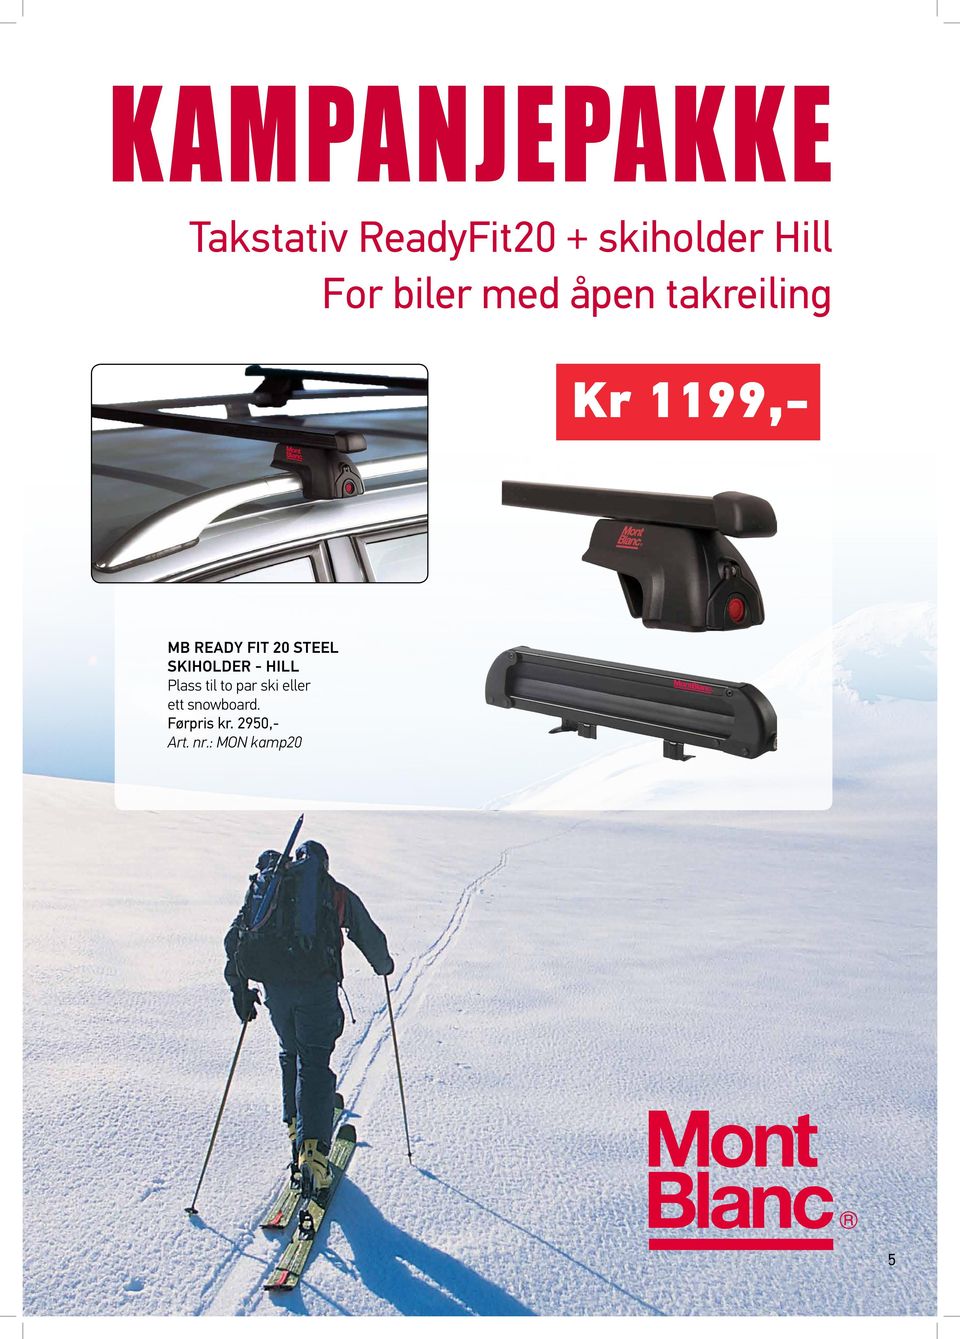 20 Steel Skiholder - Hill Plass til to par ski eller